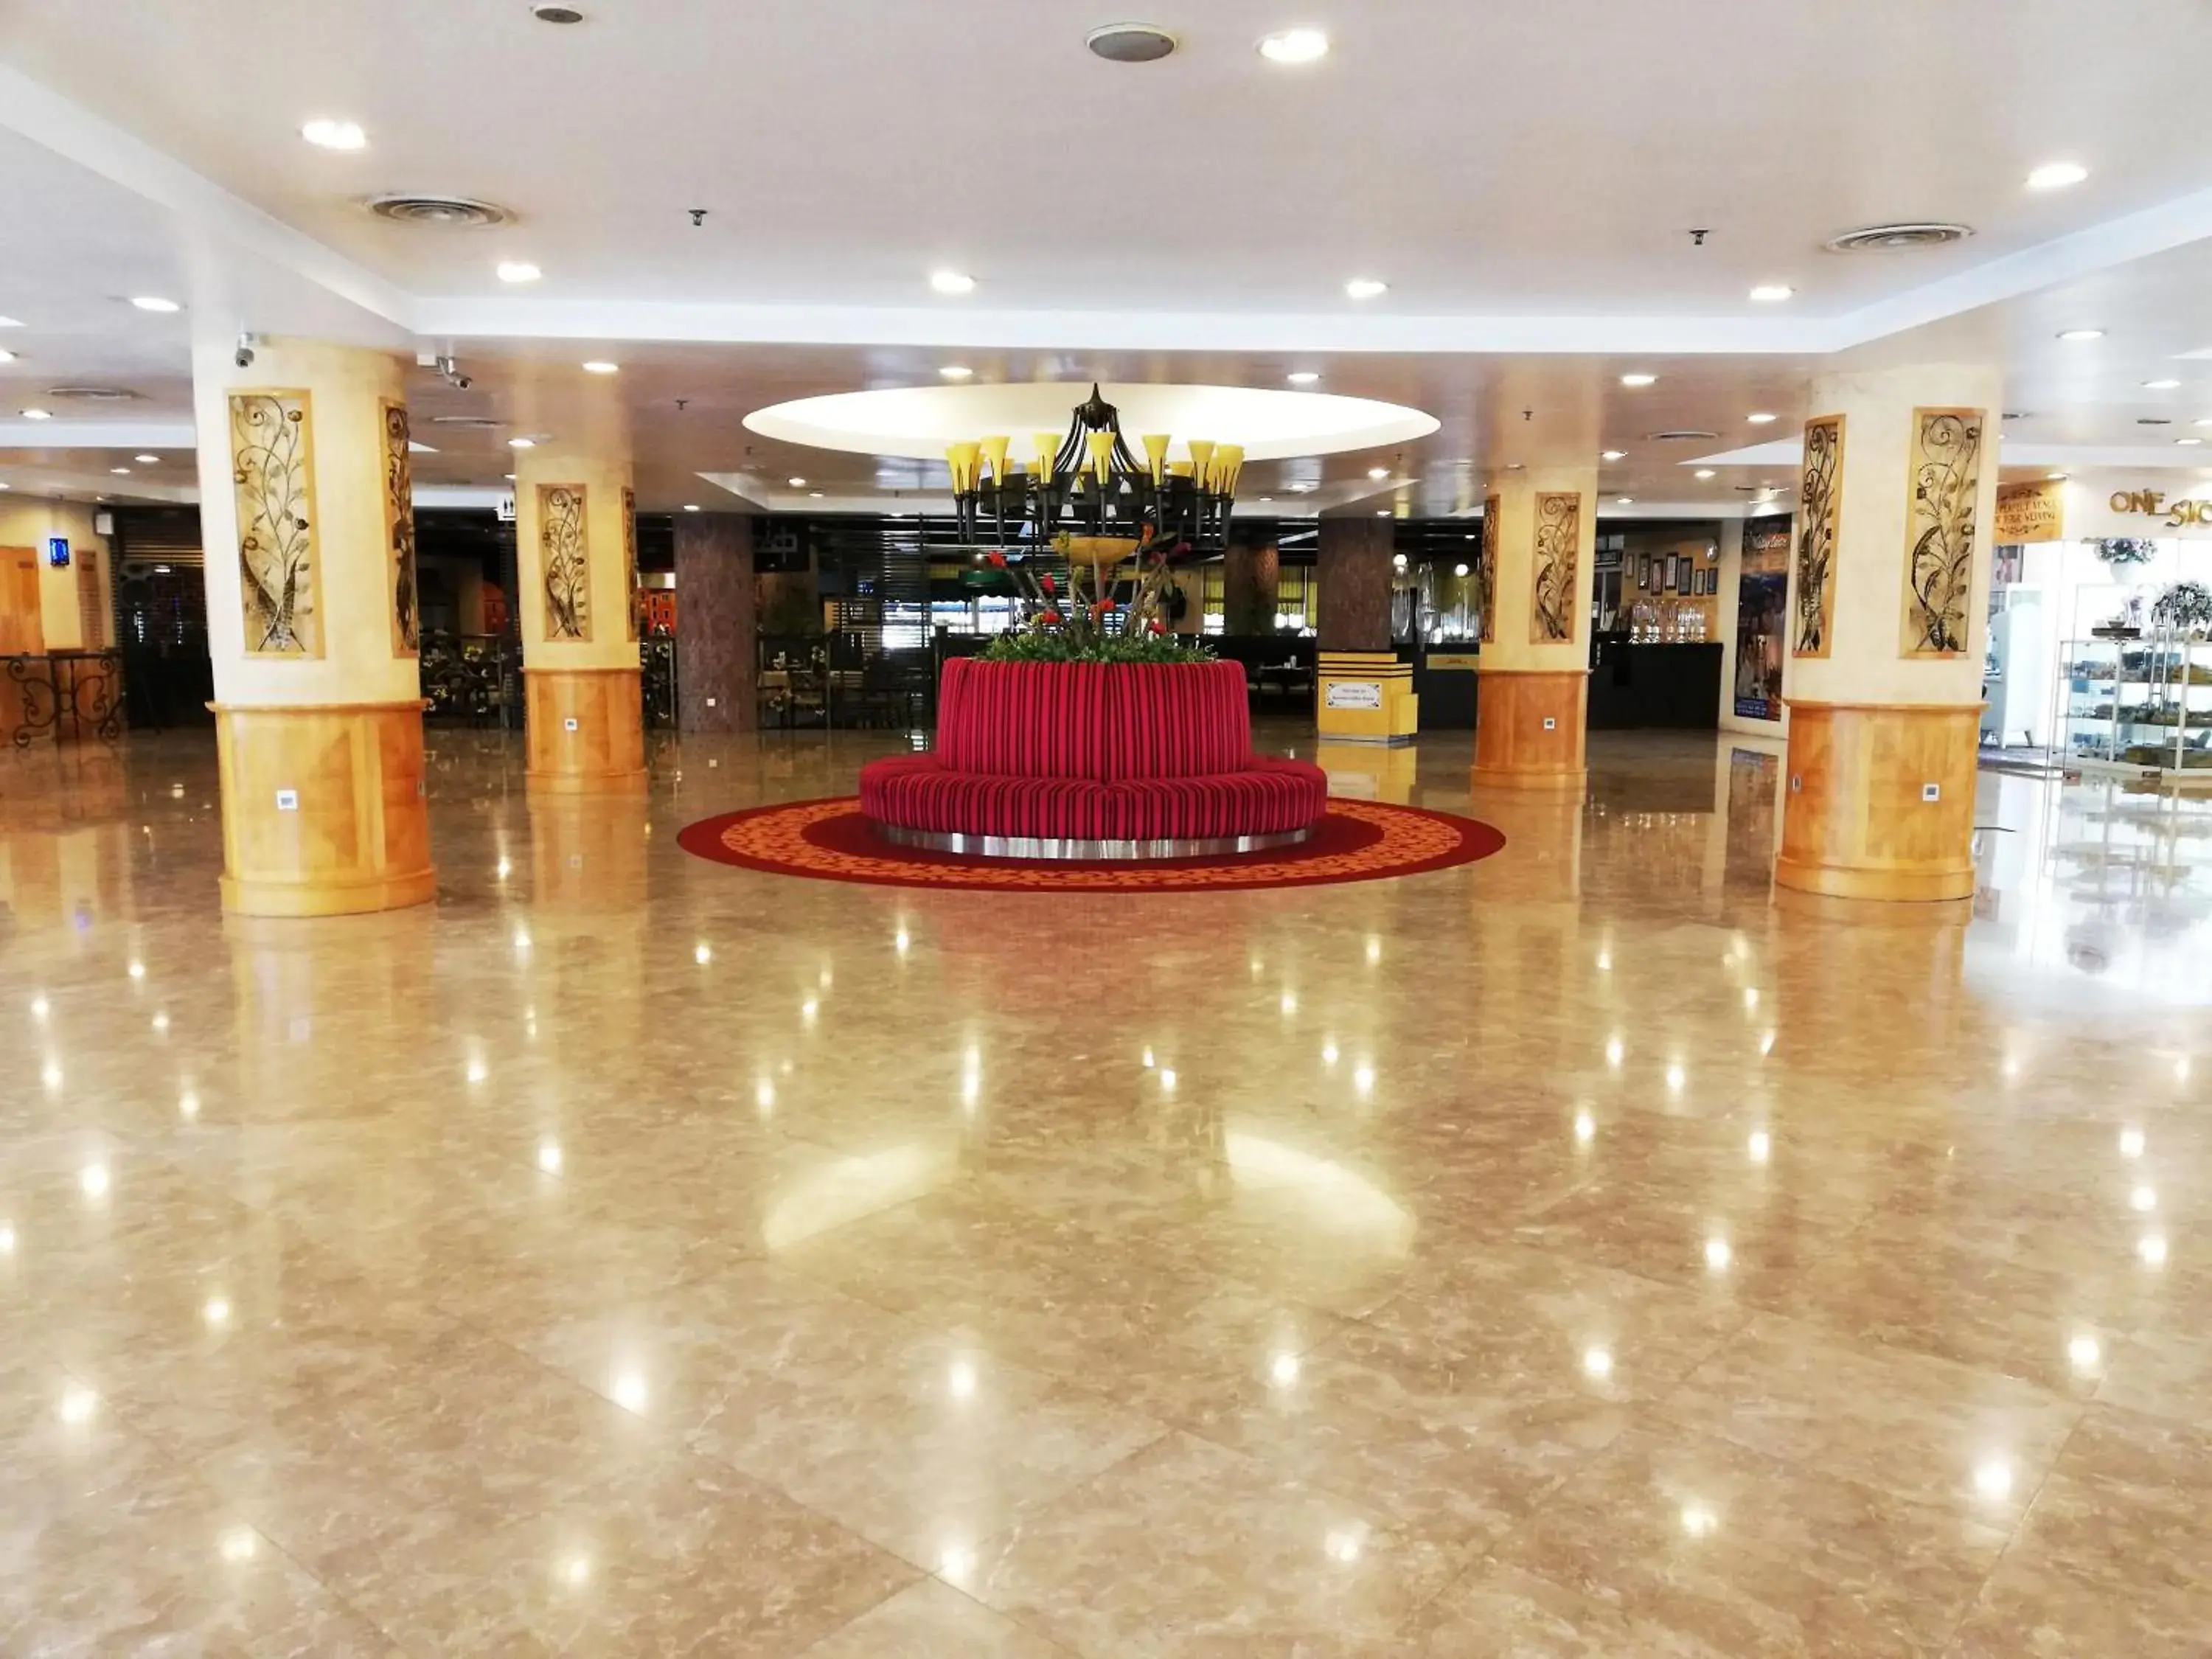 Lobby or reception, Banquet Facilities in De Palma Hotel Shah Alam